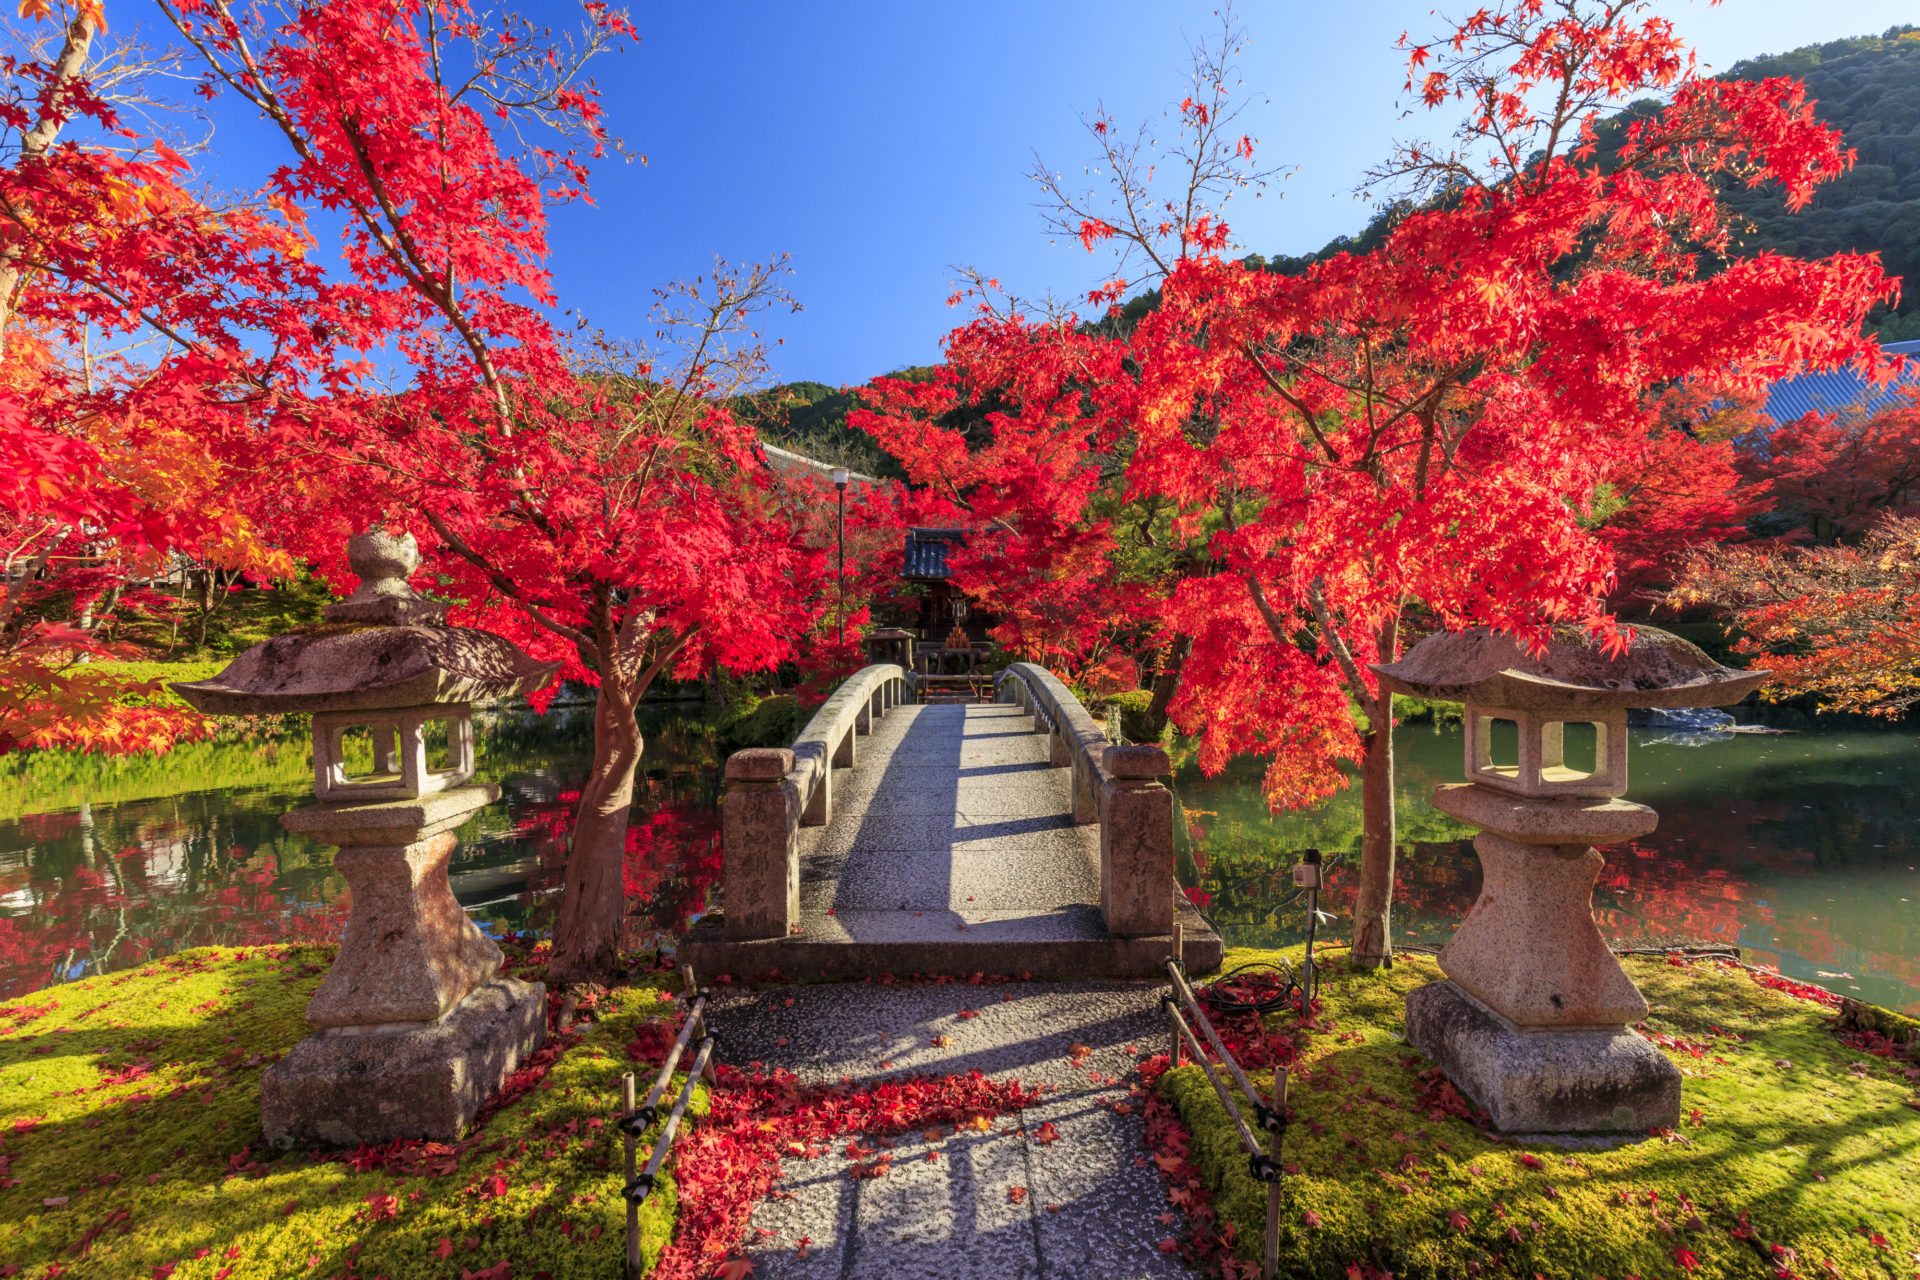 年の秋は永観堂 禅林寺 の紅葉を見に行きませんか 禅林寺の魅力をお伝えします Caedekyoto カエデ京都 紅葉と伝統美を引き継ぐバッグ